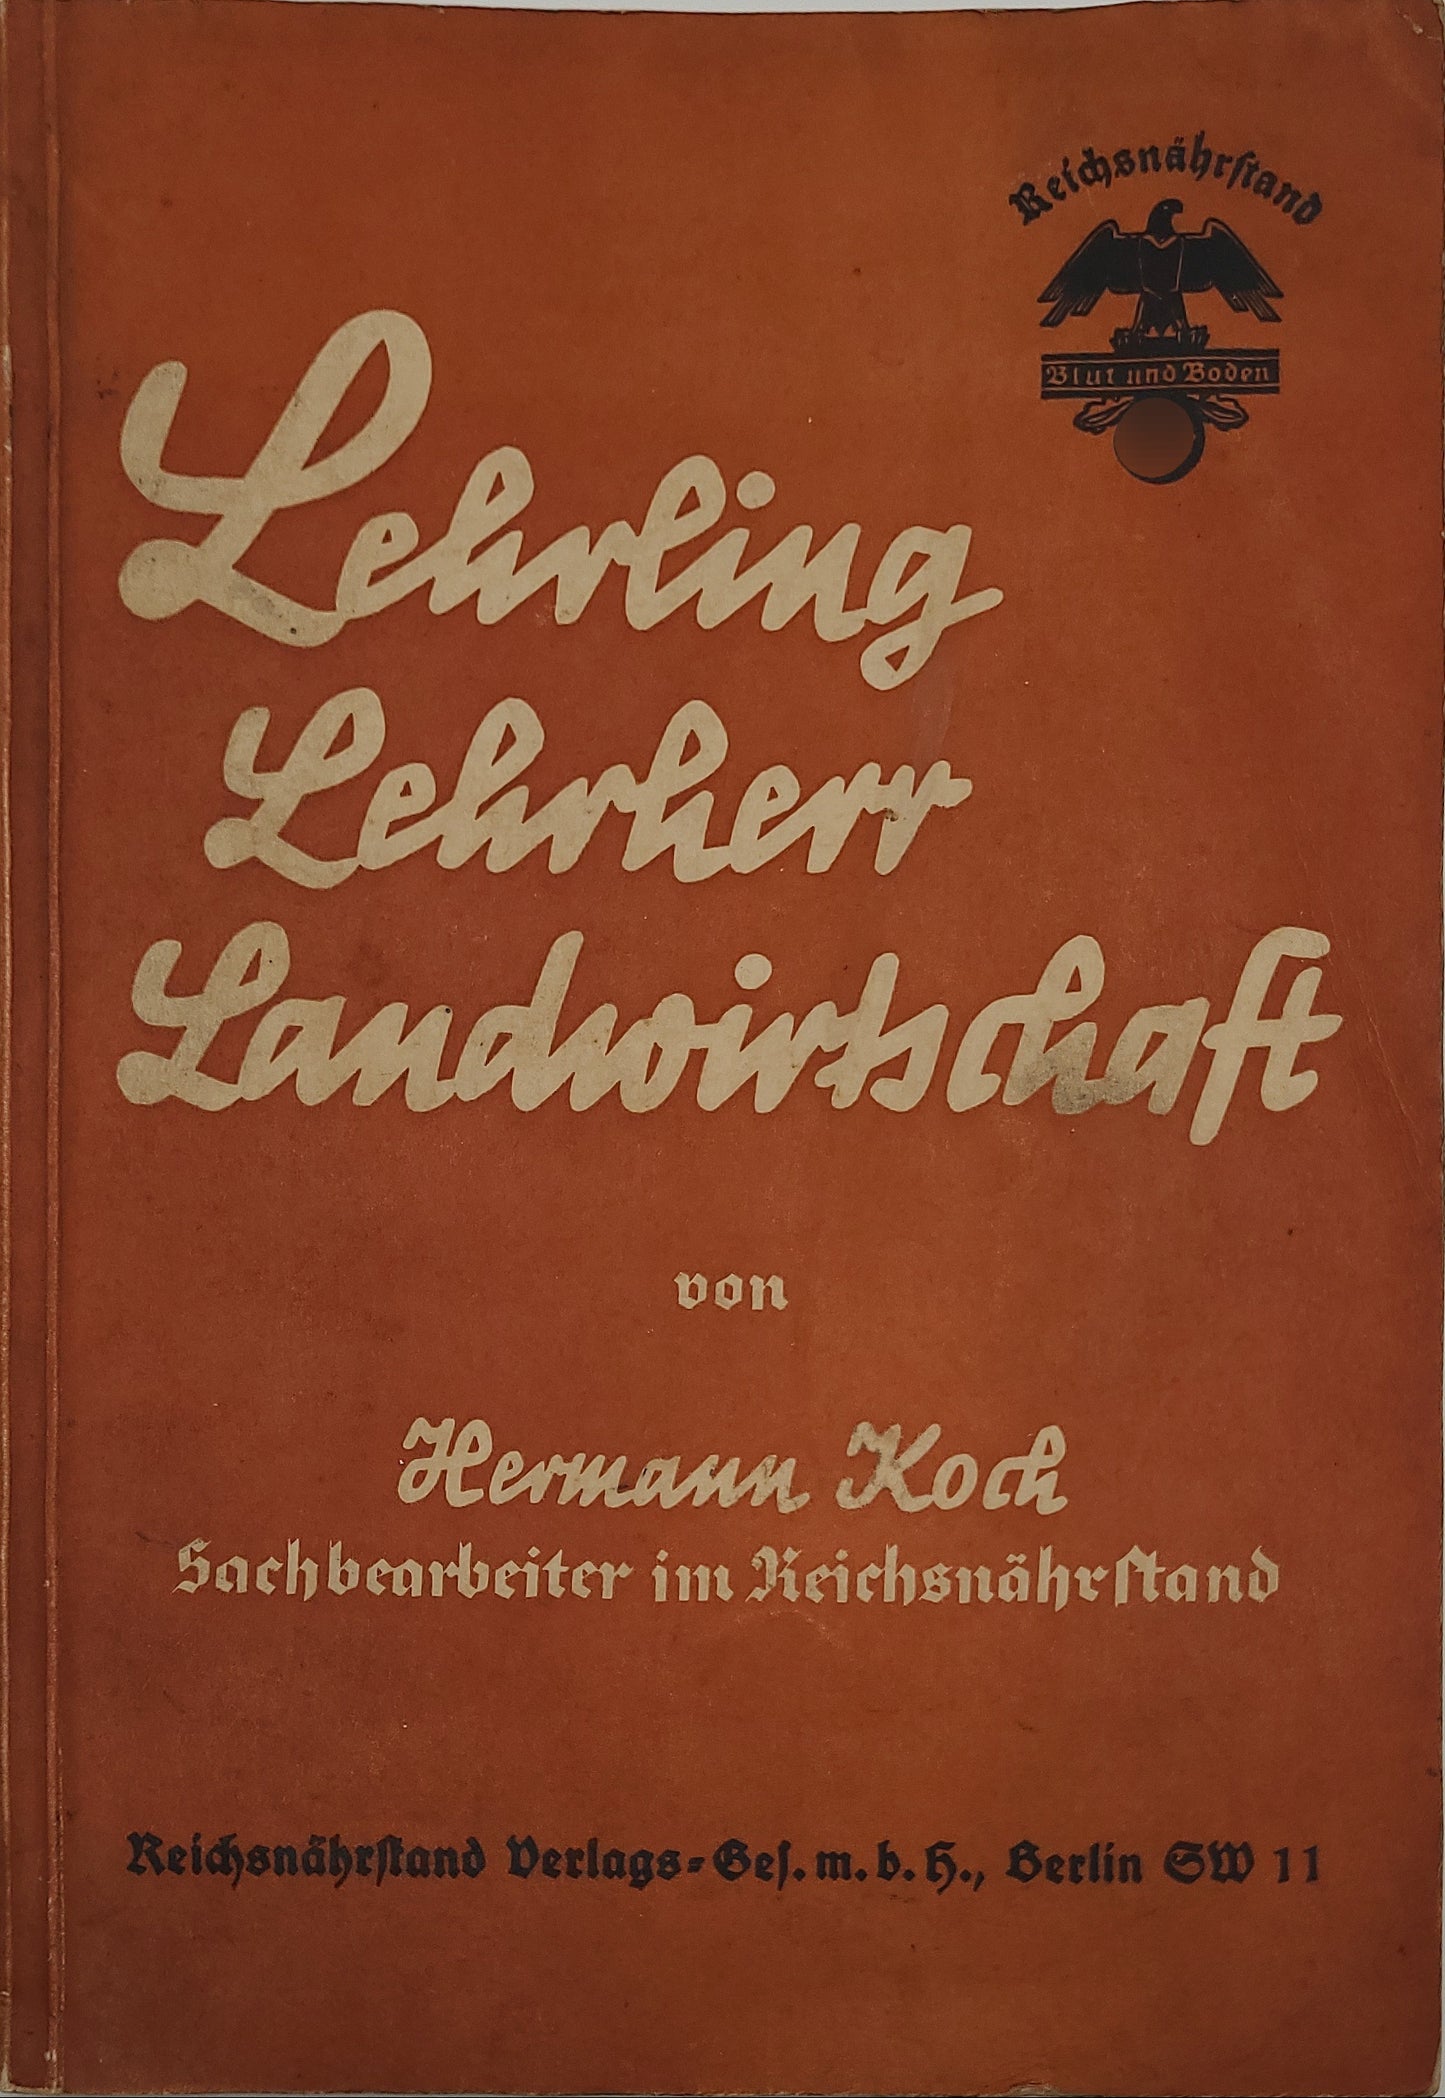 Lehrling; Lehrherr; Landwirtschaft (Reichsnährstand)